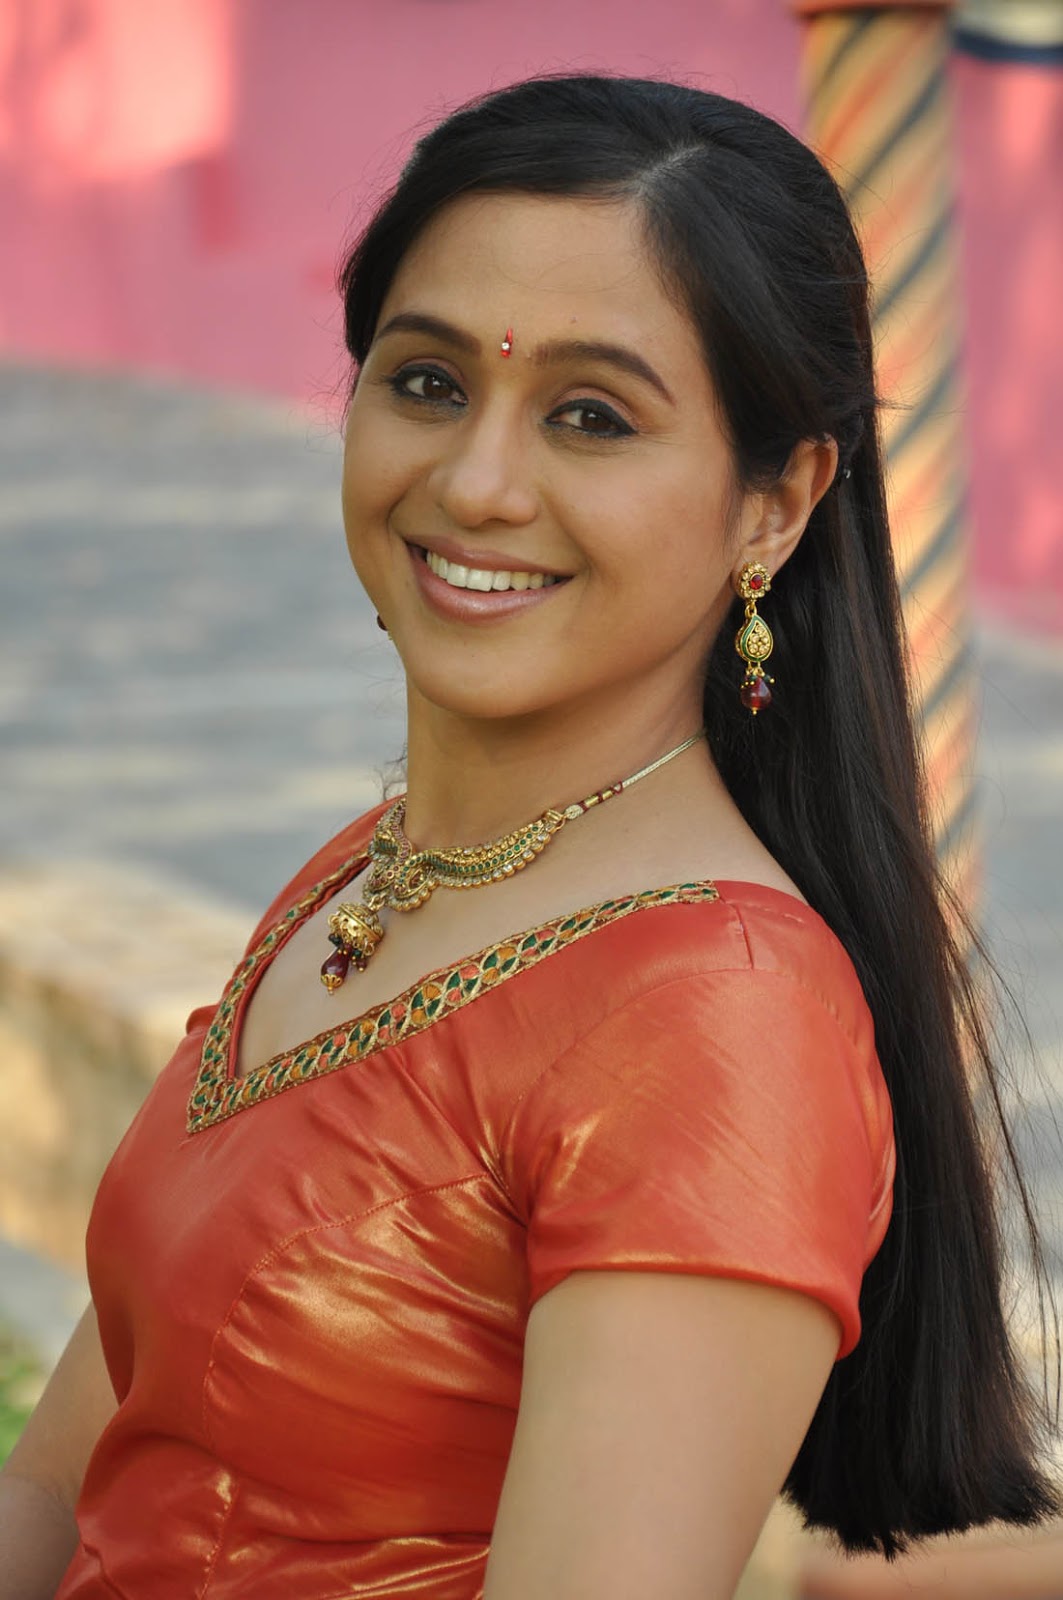 Tamil Actress Devayani Latest Photos - Actress shOts